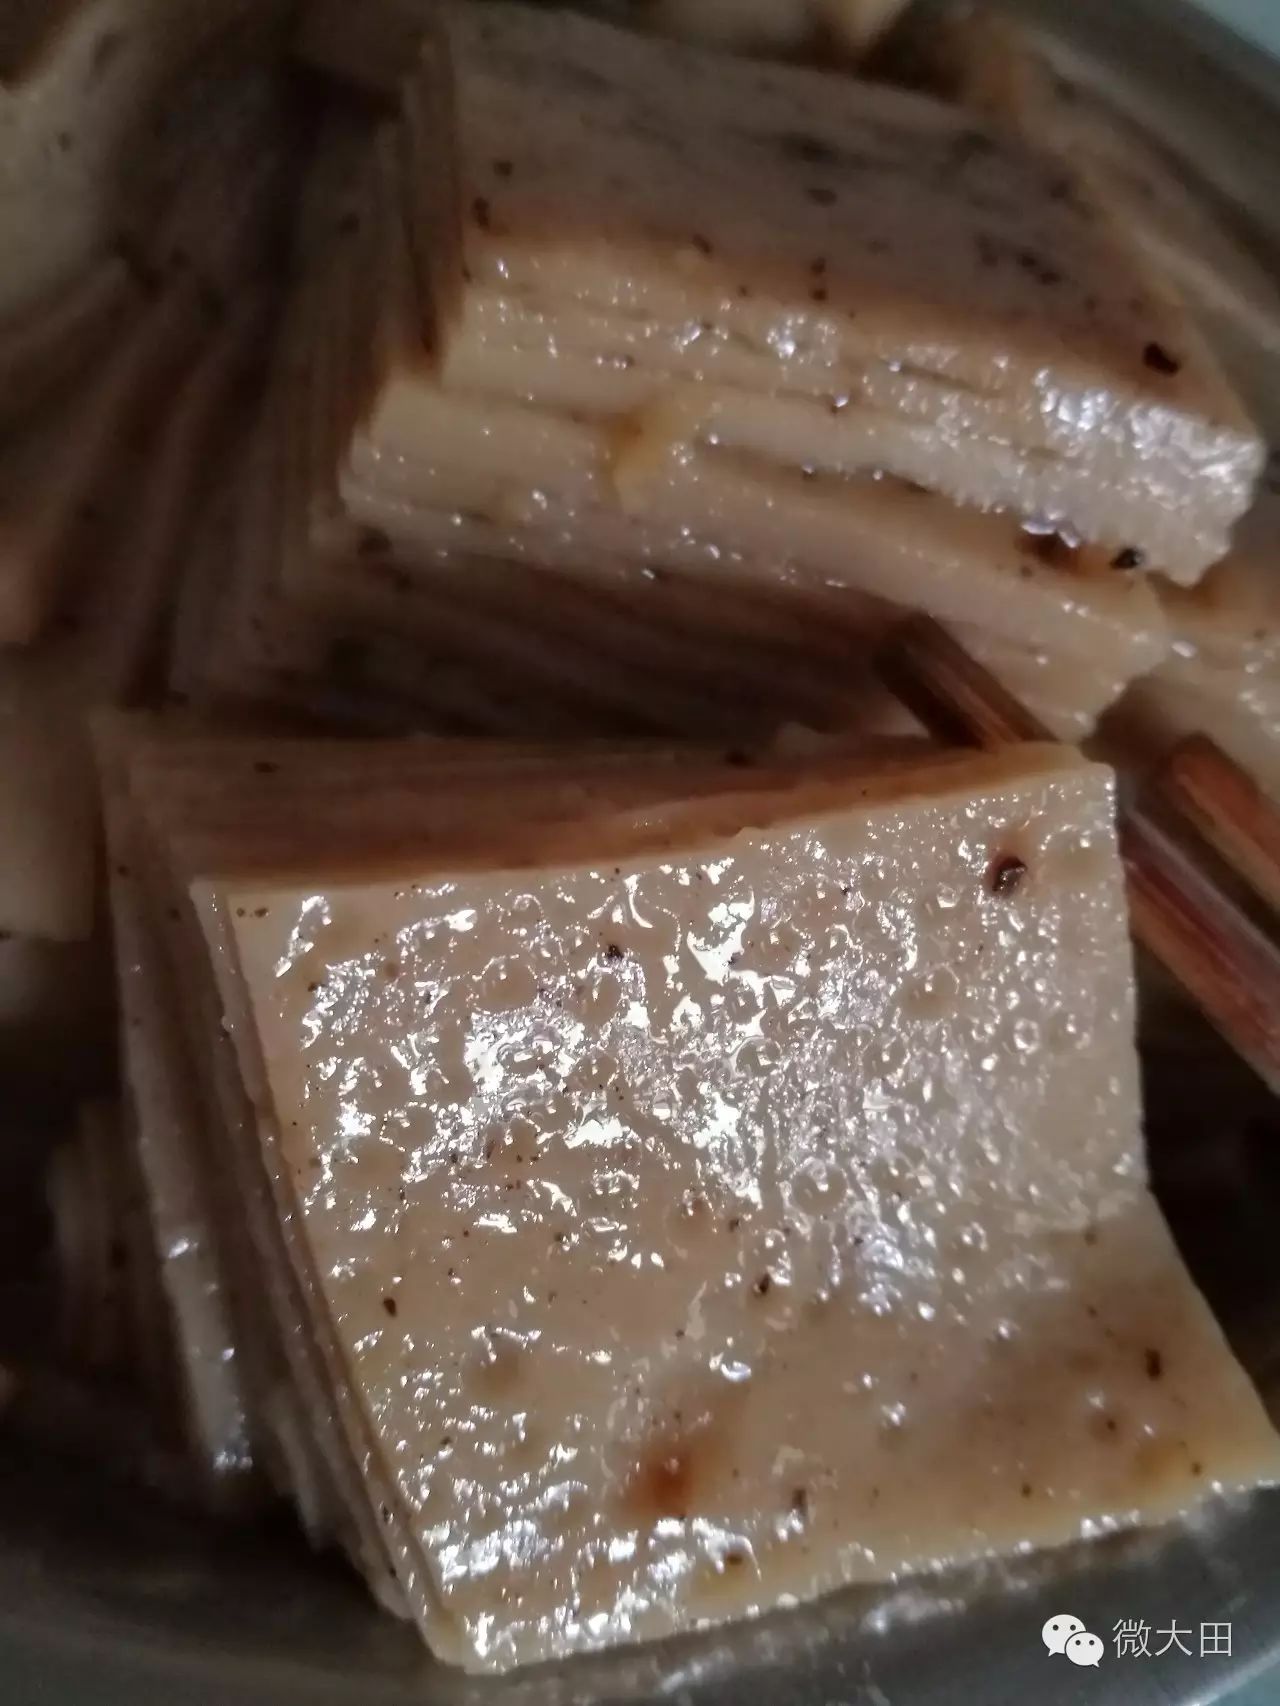 福建大田九层粿:米浆合成的地方经典小吃